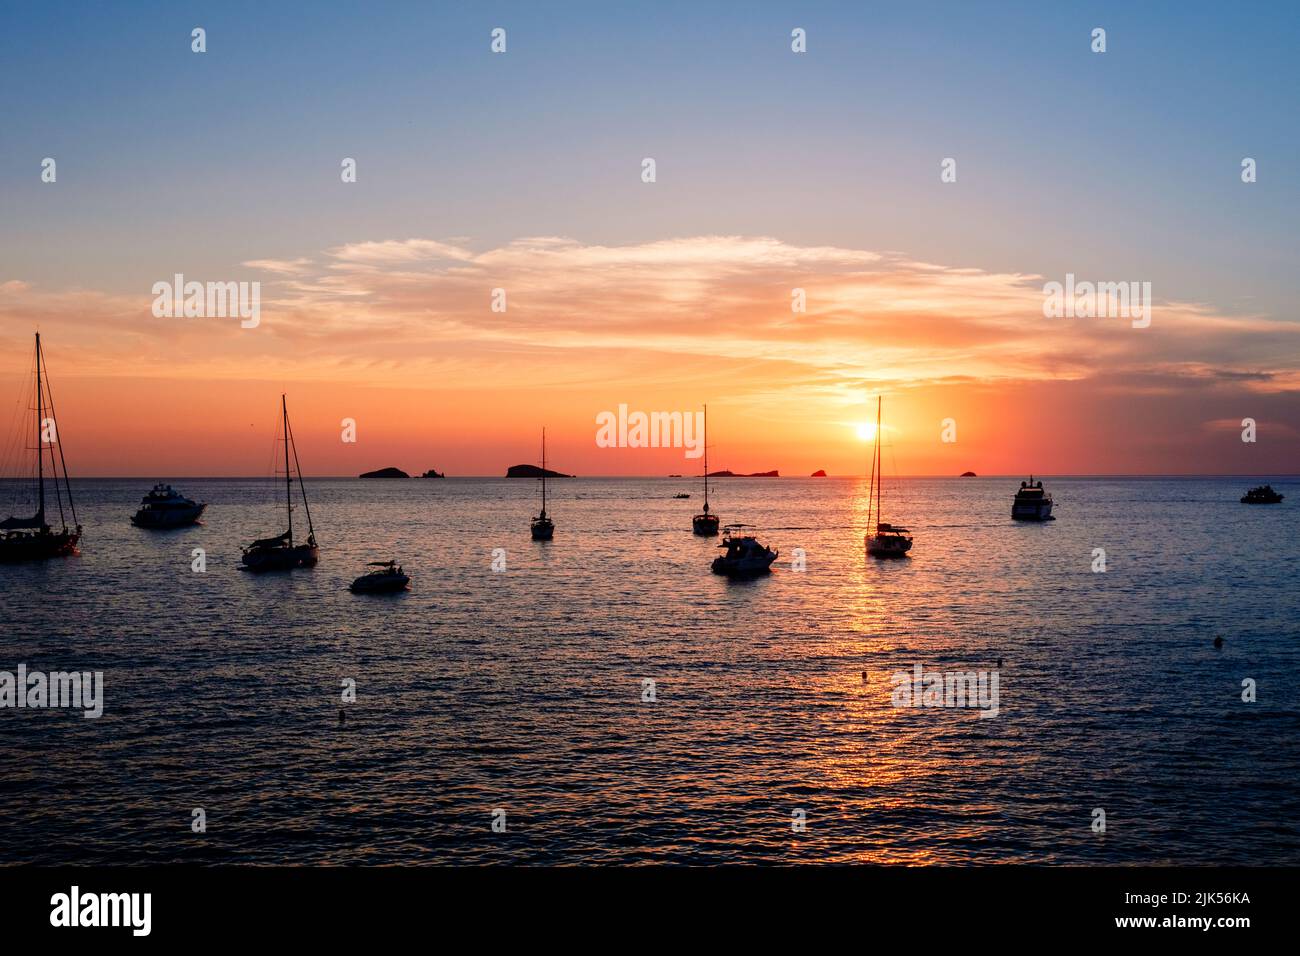 Un coucher de soleil chaud avec le soleil se reflétant sur la surface de la mer, près de la baie avec des bateaux. Banque D'Images